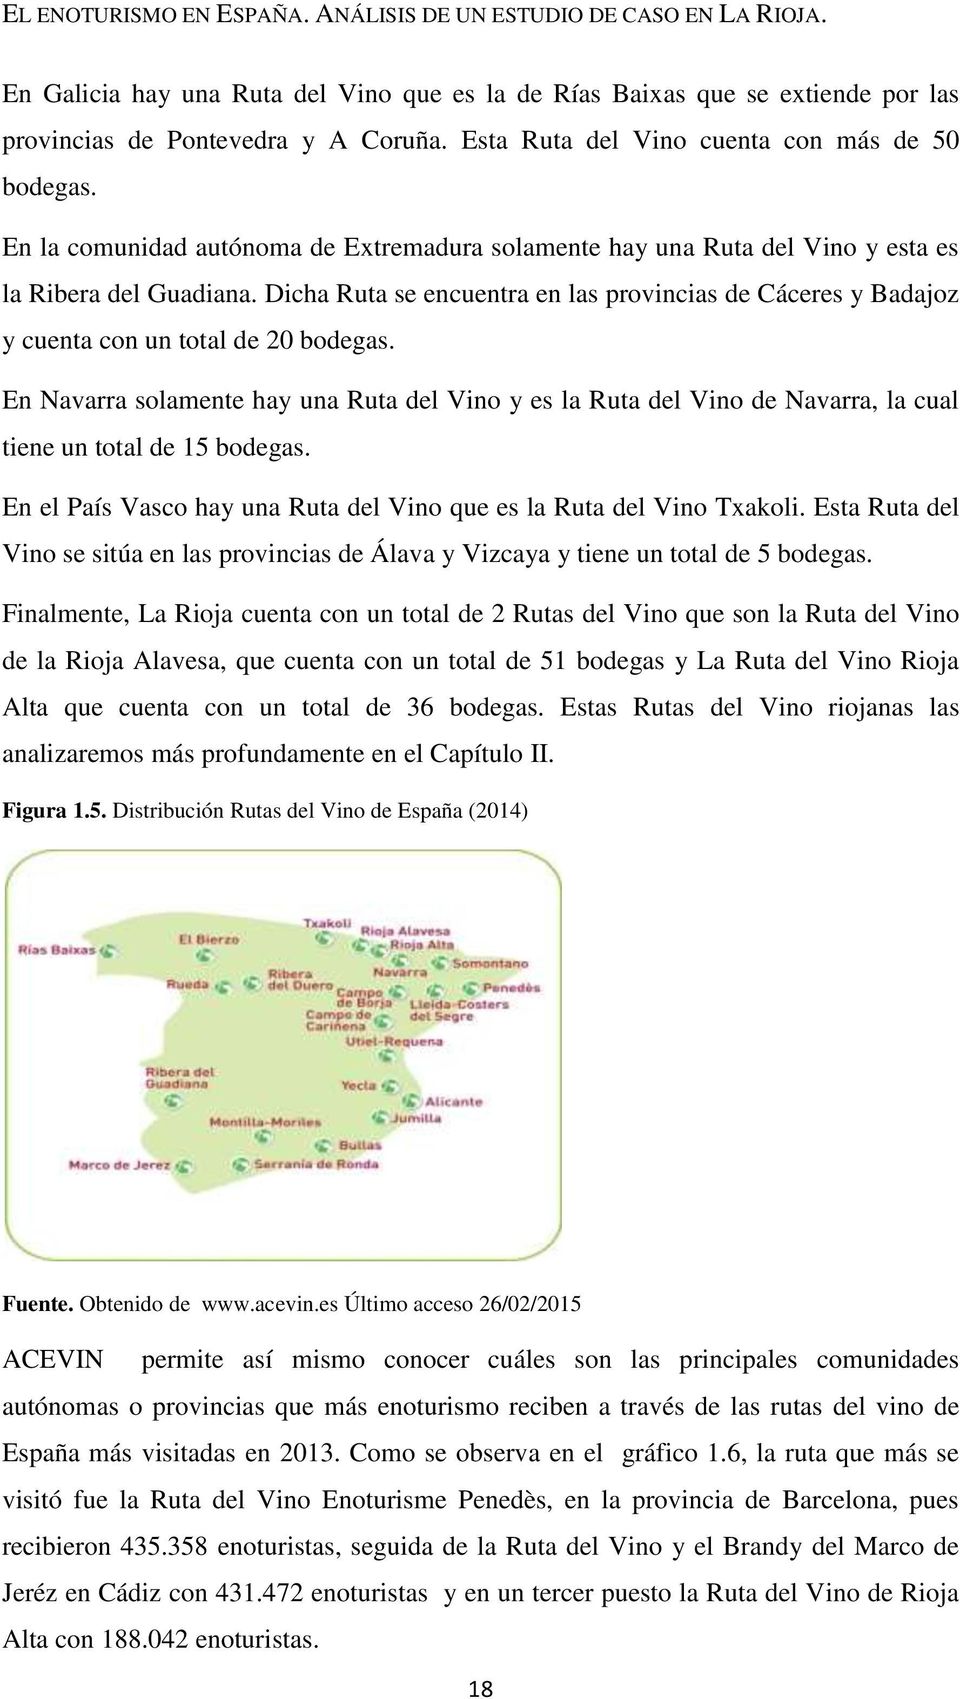 Dicha Ruta se encuentra en las provincias de Cáceres y Badajoz y cuenta con un total de 20 bodegas.